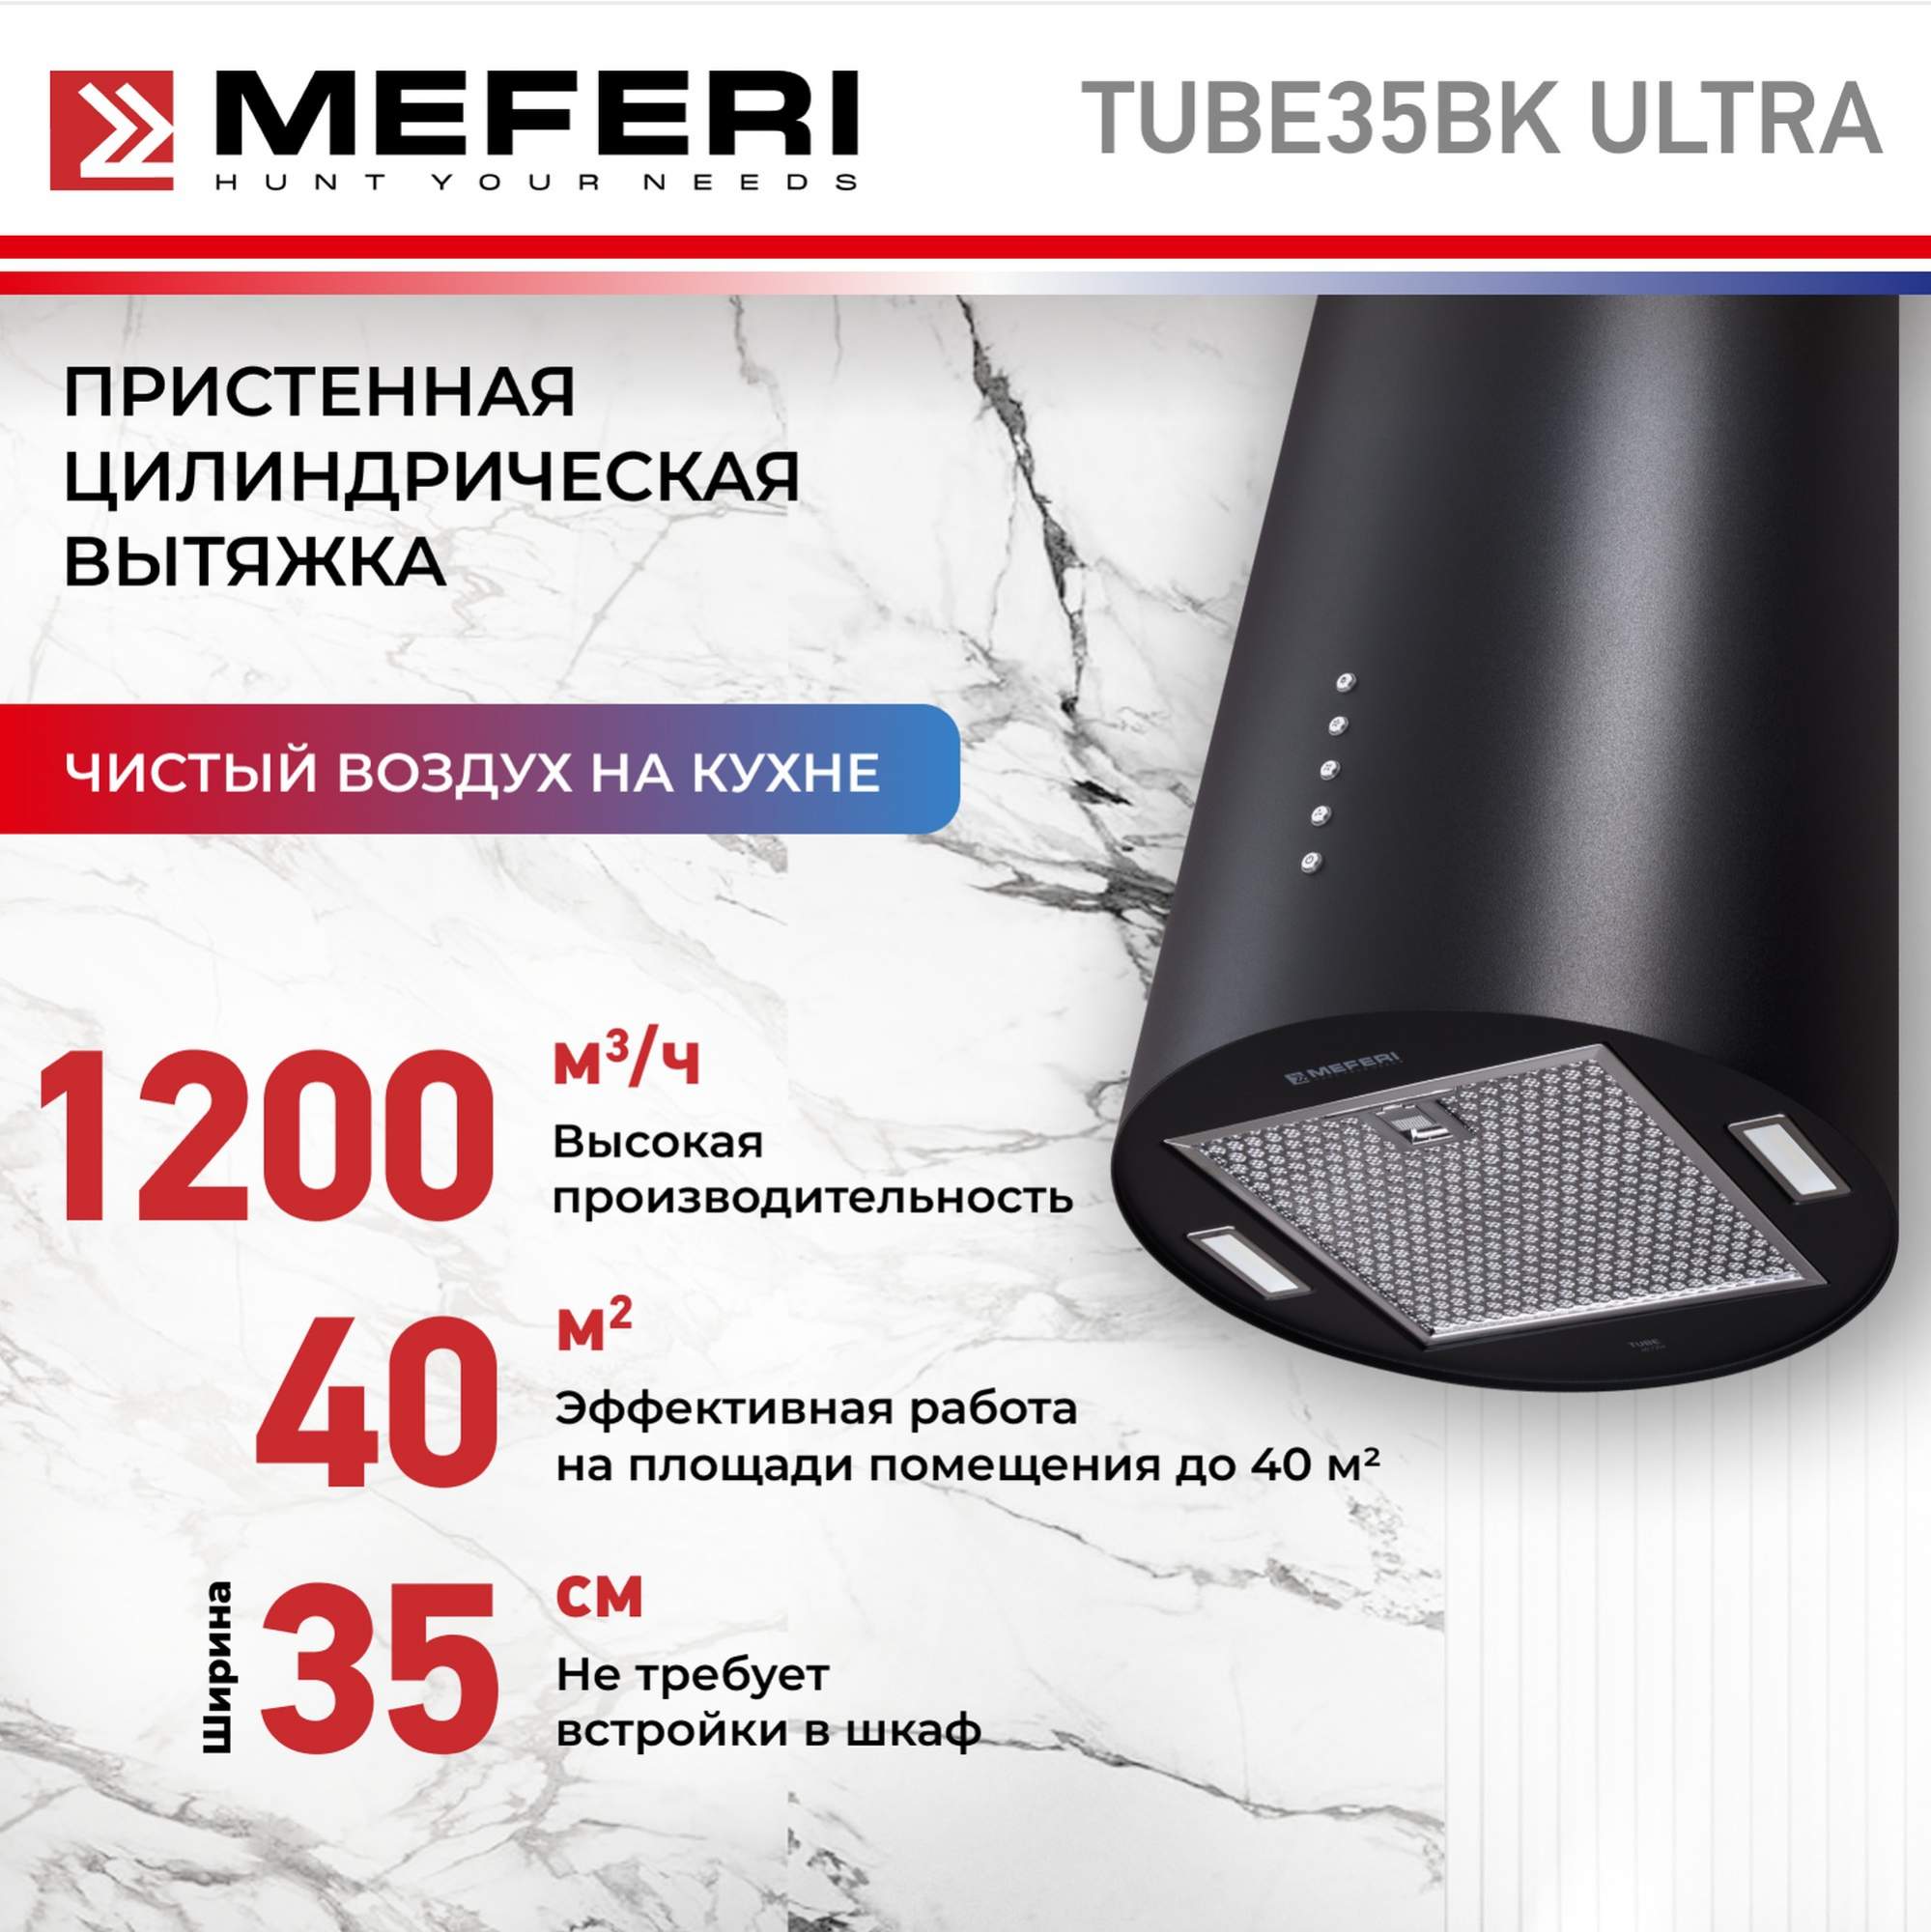 Цилиндрическая вытяжка Meferi TUBE35BK ULTRA полновстраиваемая вытяжка meferi inbox60bk ultra